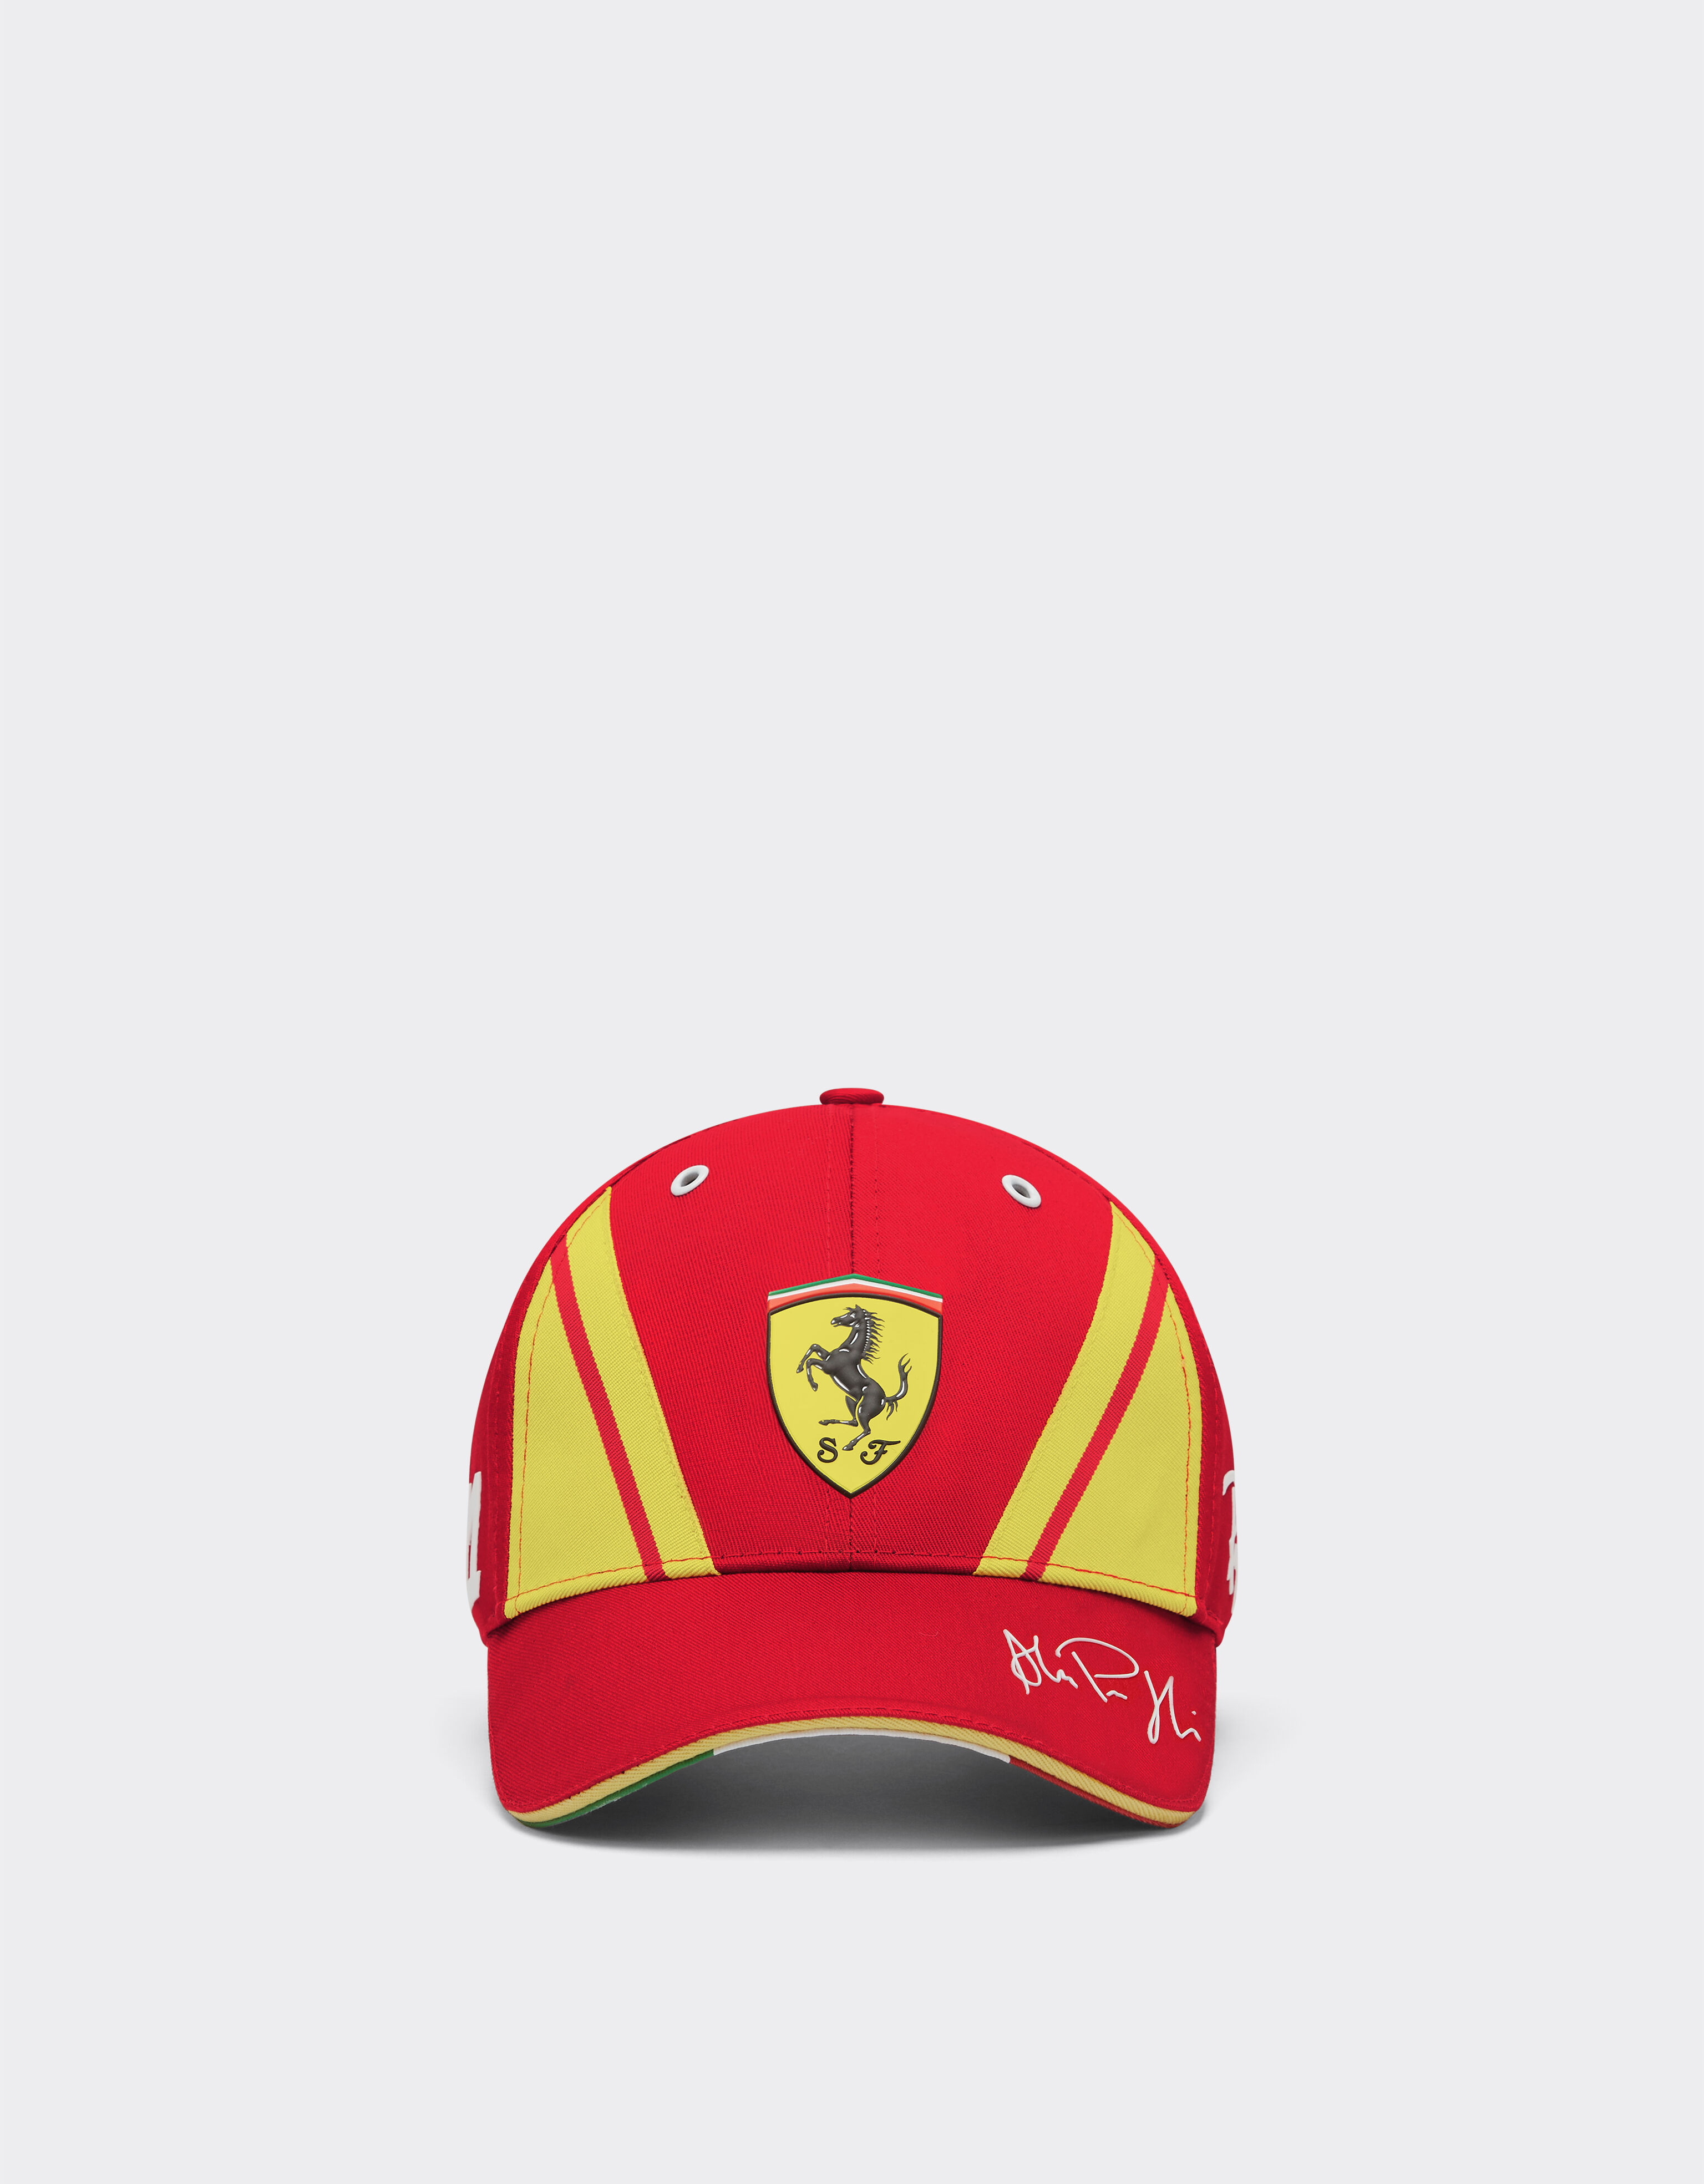 Ferrari Ferrari Guidi Hypercar Hat - Limited Edition Red F1325f